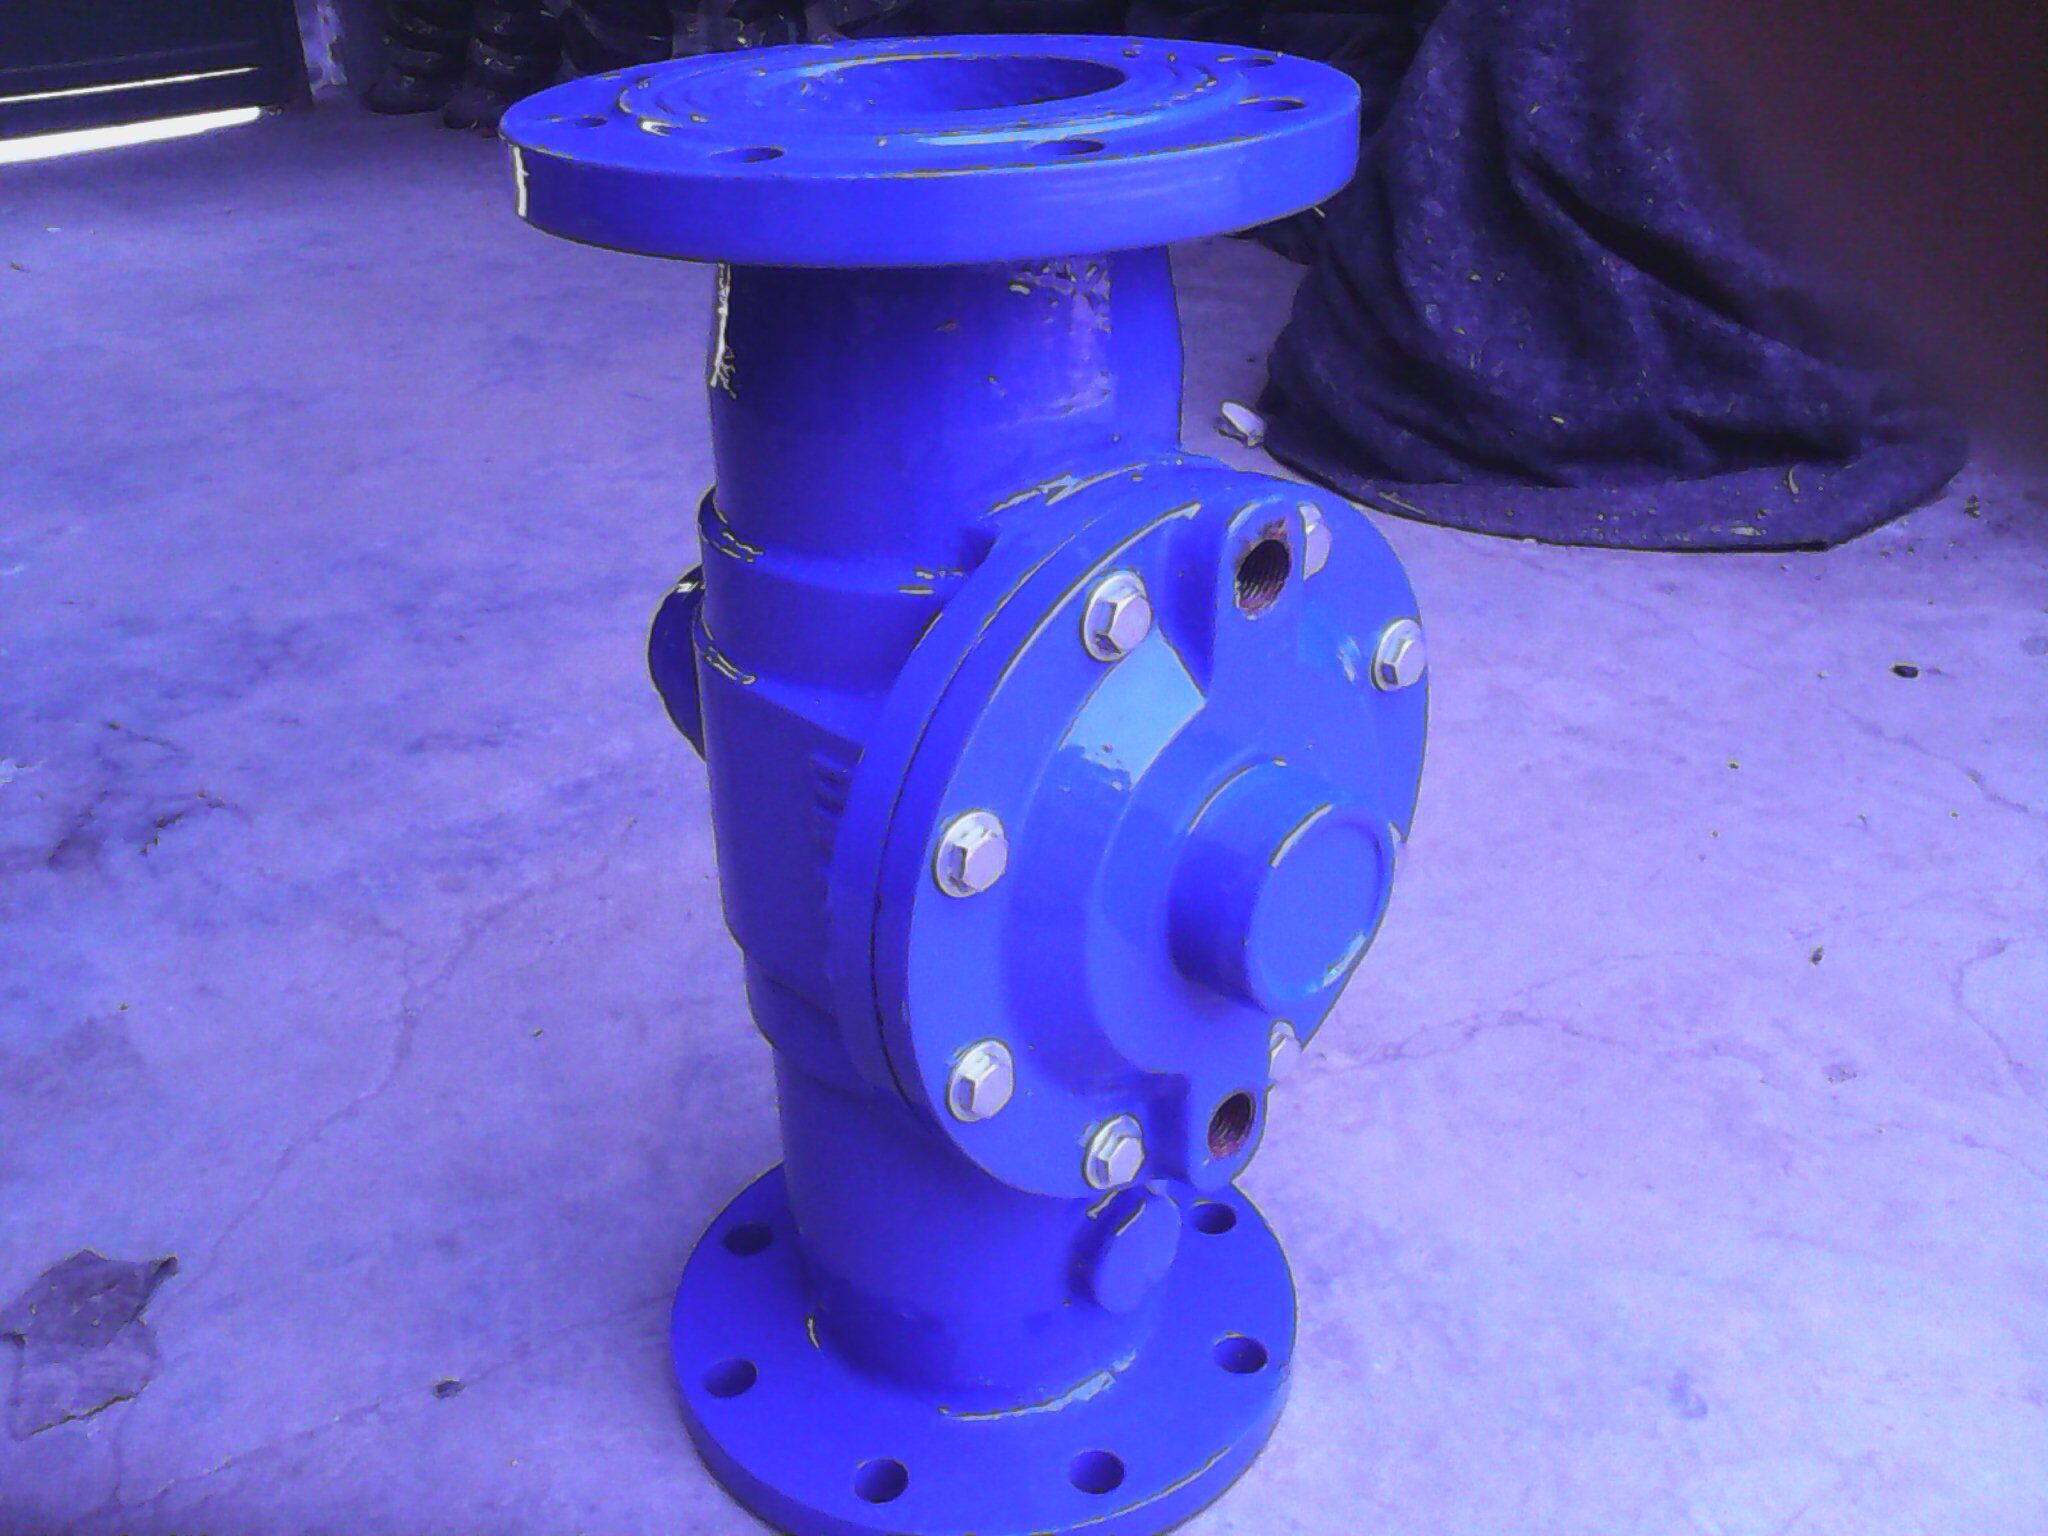 倒流防止器是一种采用止回部件组成的可防止给水管道水流倒流的装置